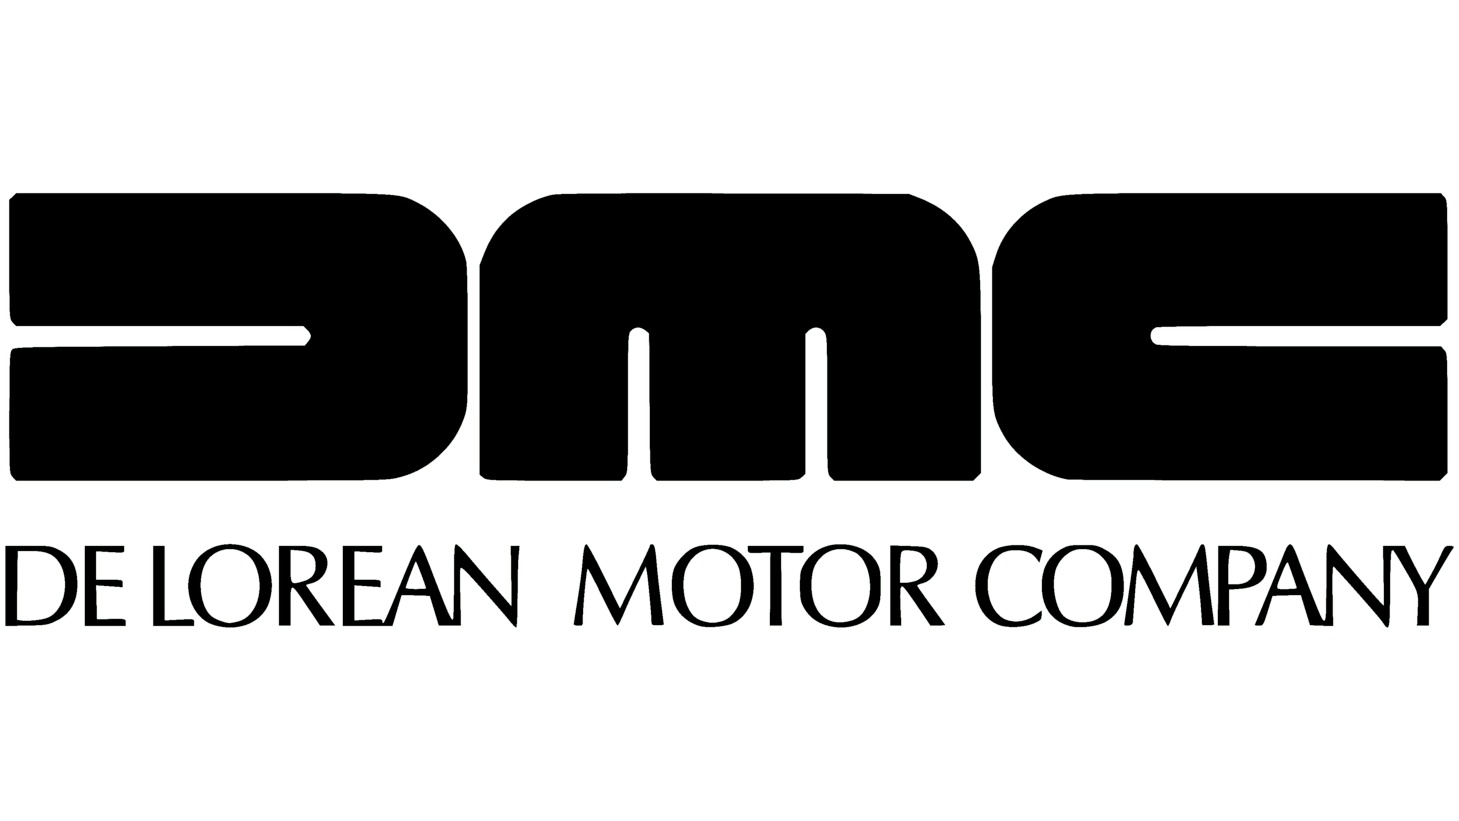 Delorean motor company sign 1995 2008